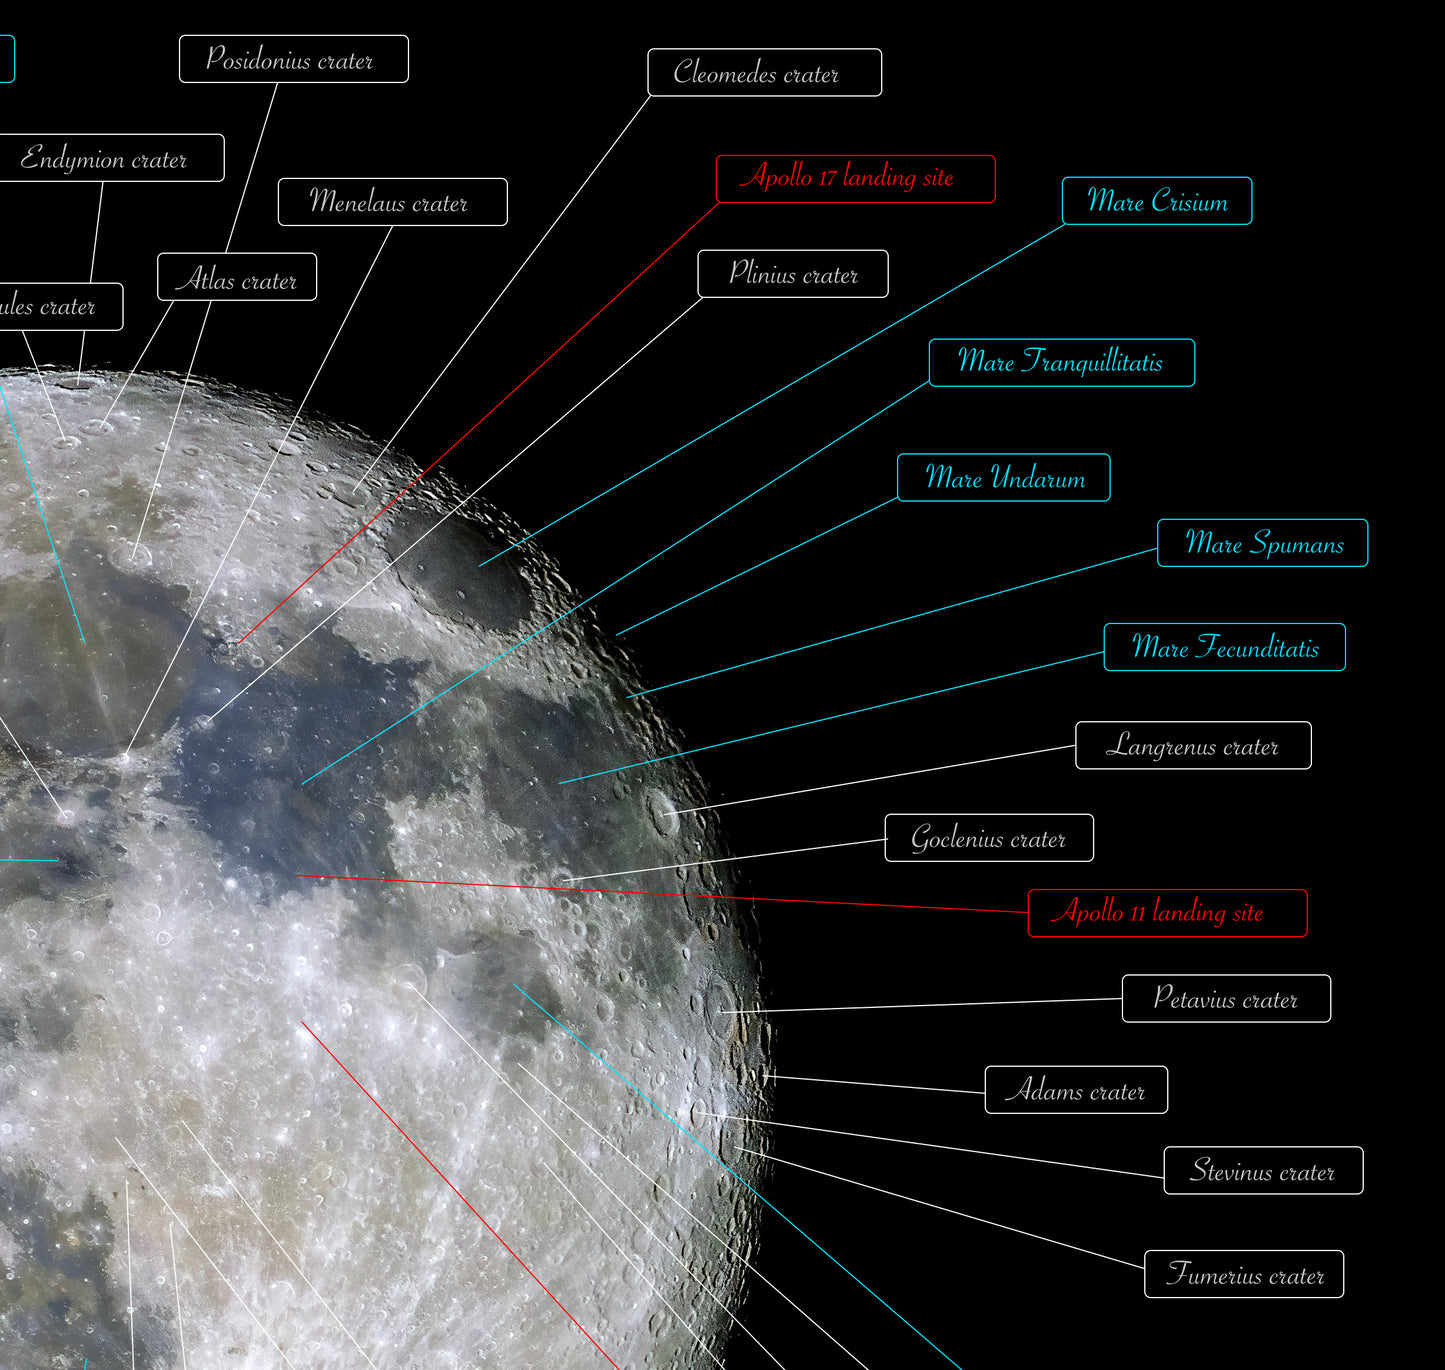 Mappa della faccia visibile della Luna